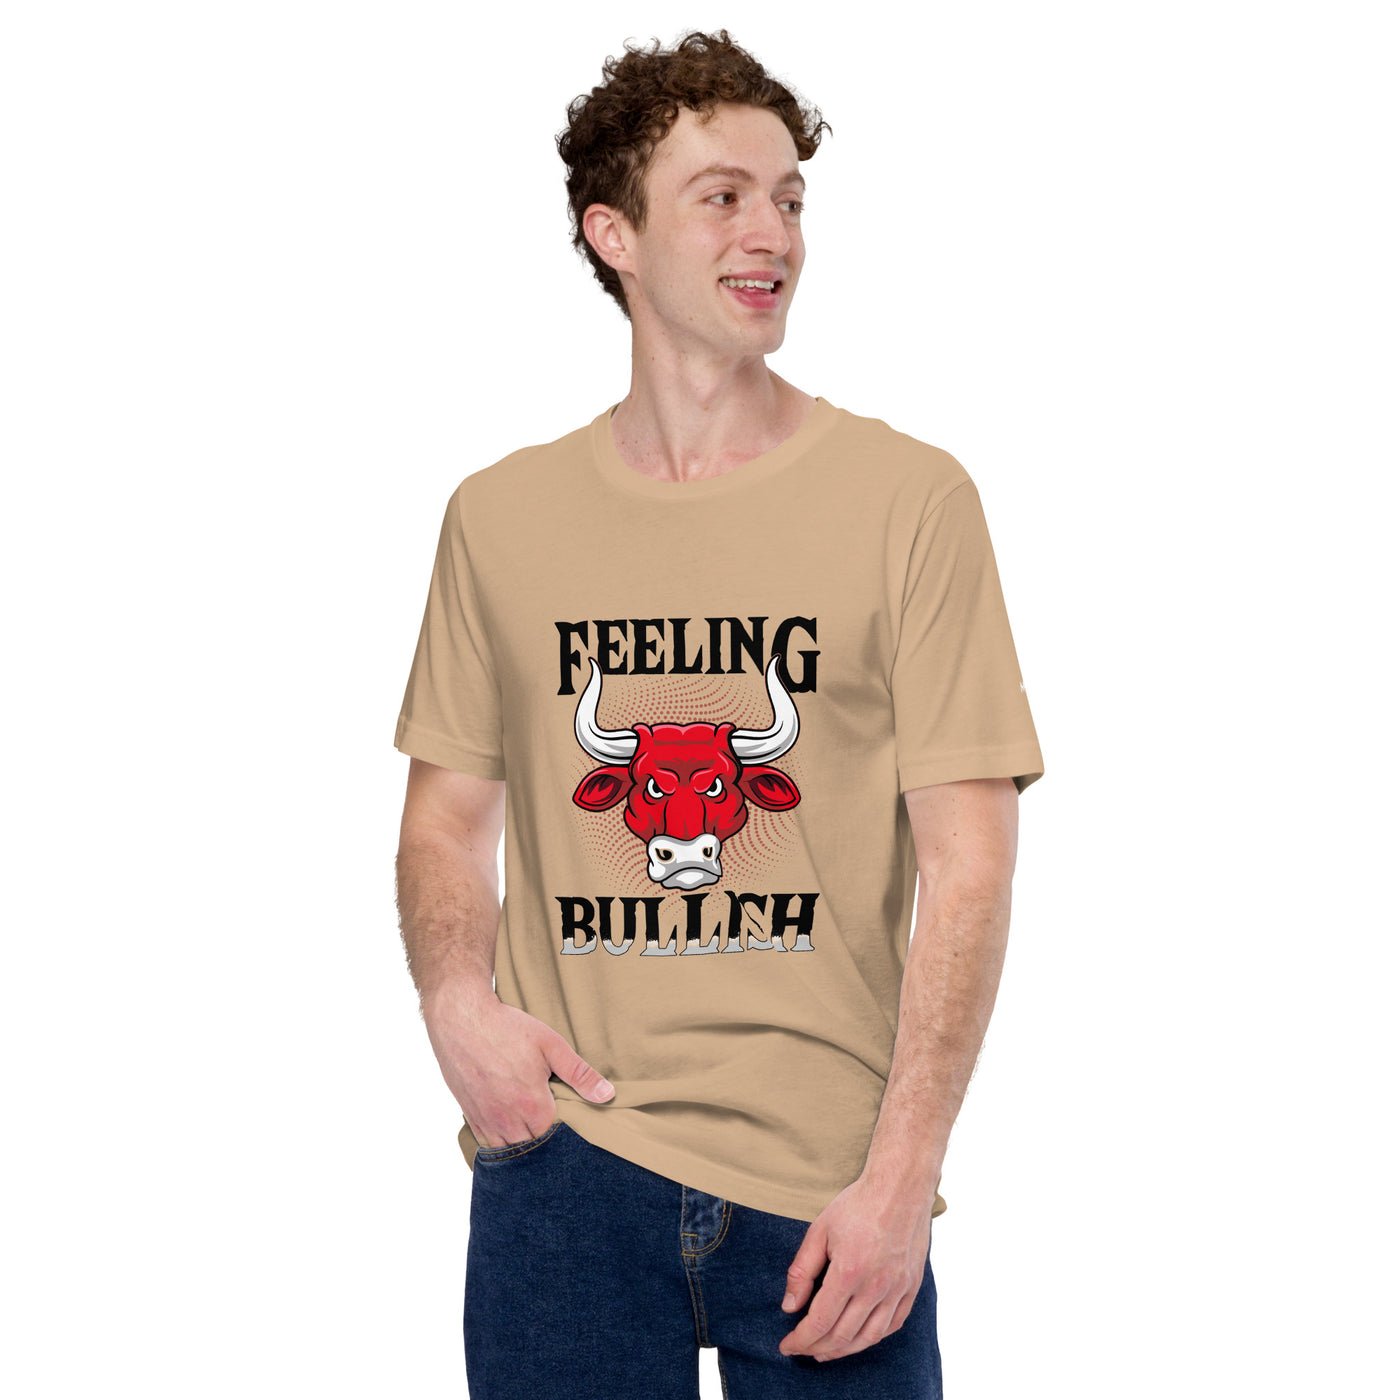 Feeling Bullish in Dark Text - Unisex t-shirt